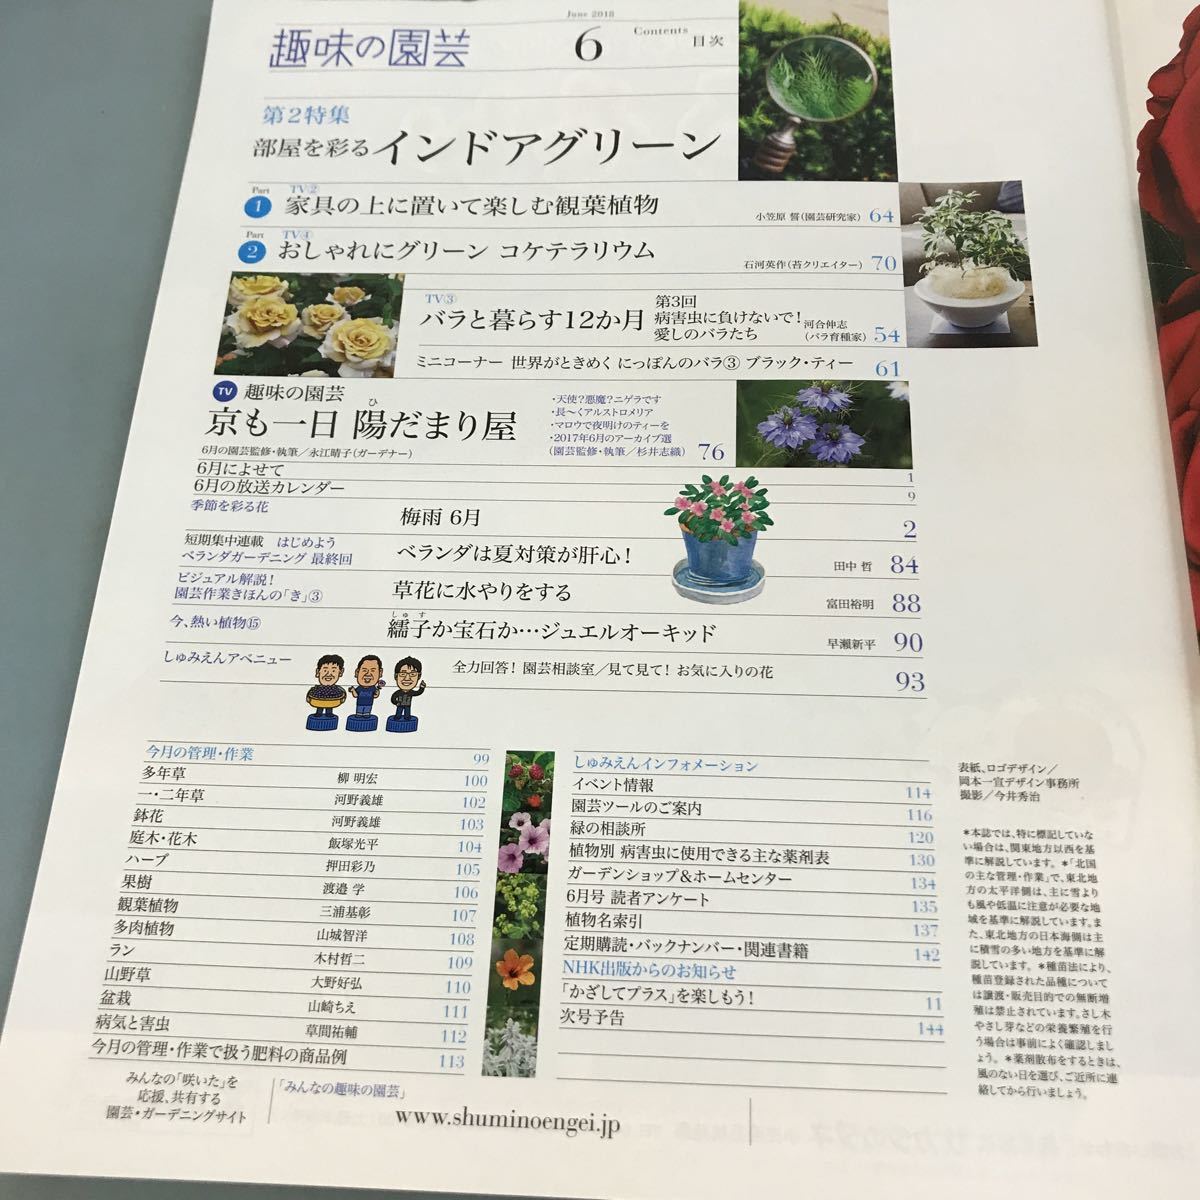 A58-109 NHK хобби. садоводство 2018 6 роскошный ., возможно .. гортензия /koke террариум NHK выпускать 